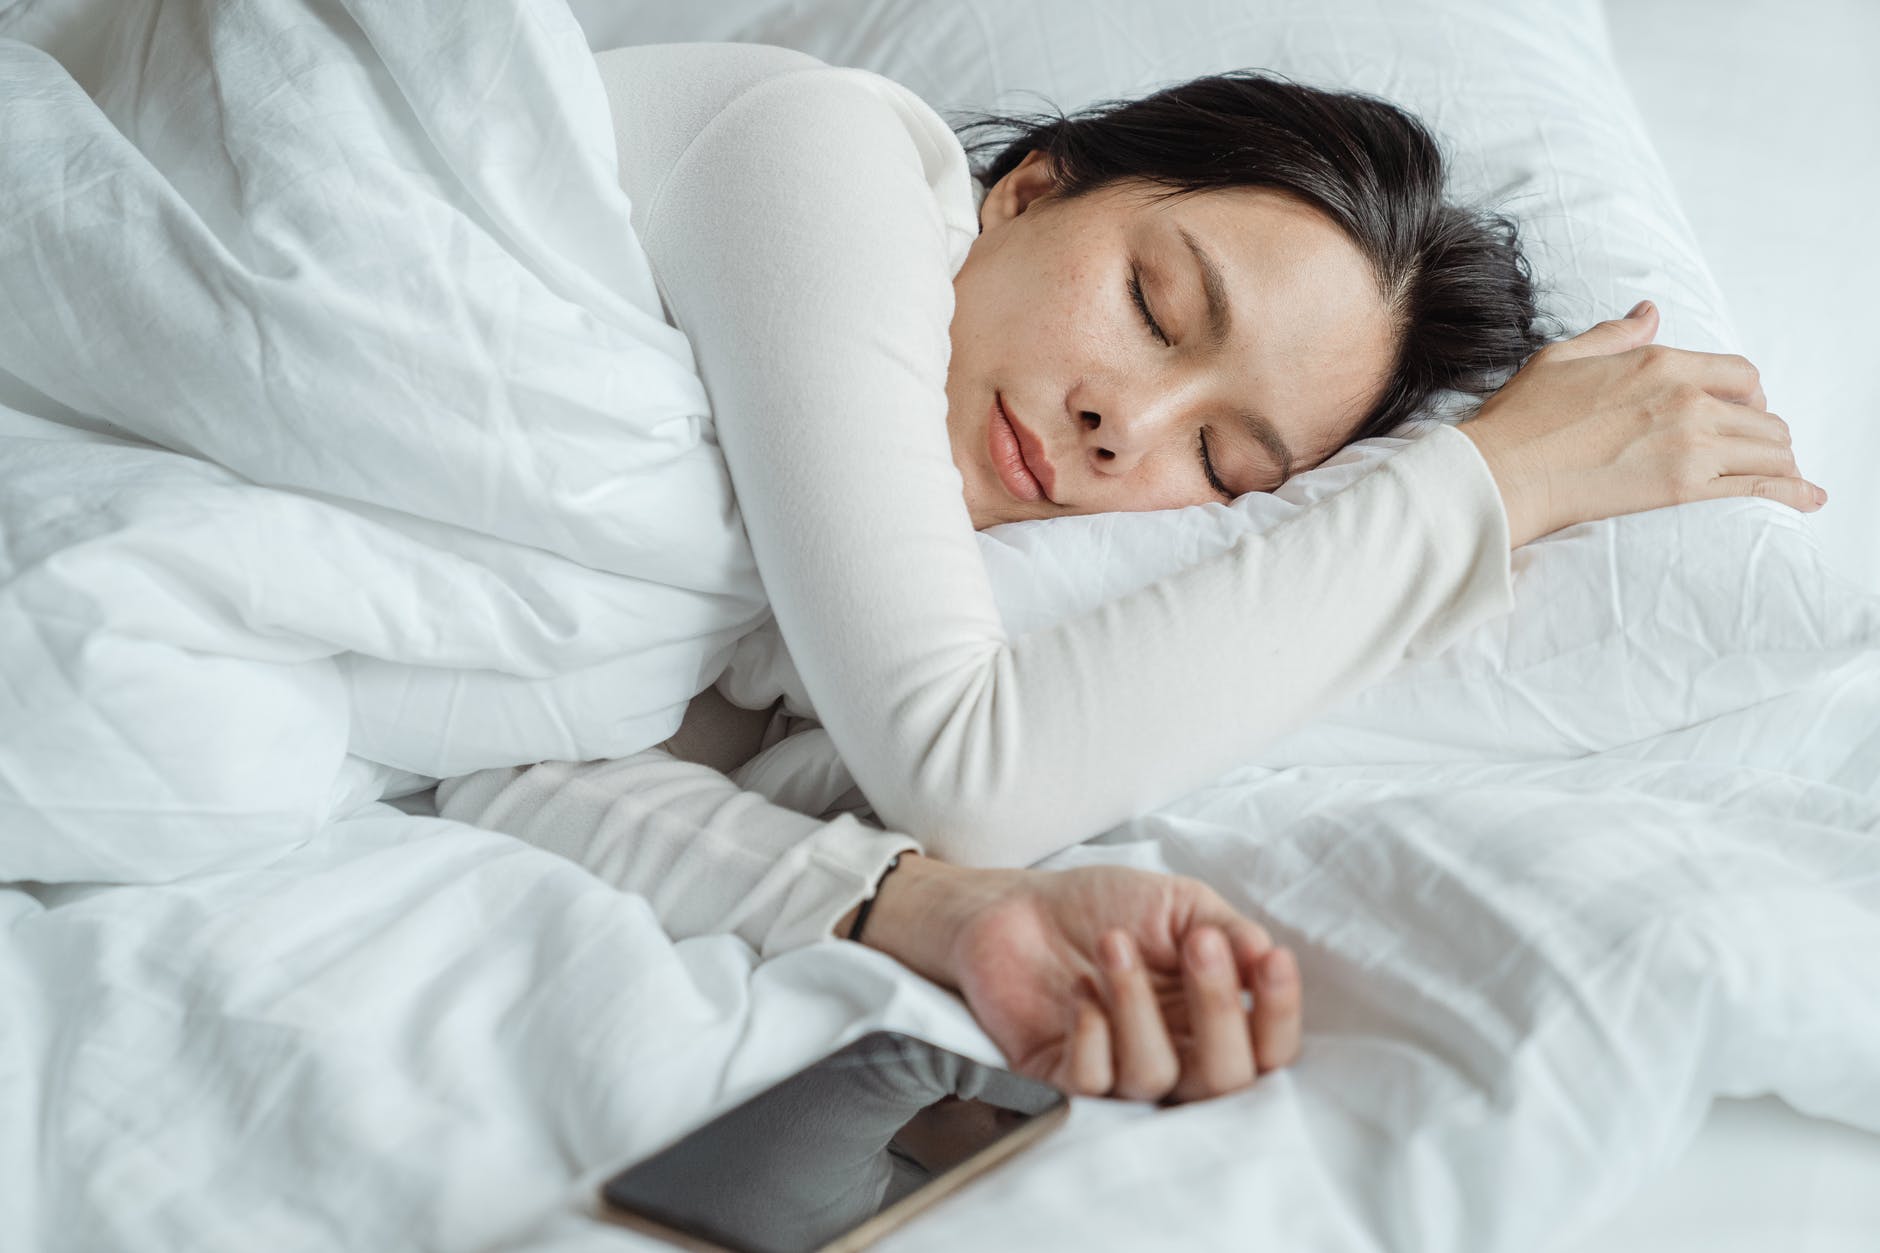 شهد الأشخاص الذين يرتدون الجوارب للنوم "7.5 مرات أقل" من عدد مرات الاستيقاظ أثناء الليل (بيكسيلز)